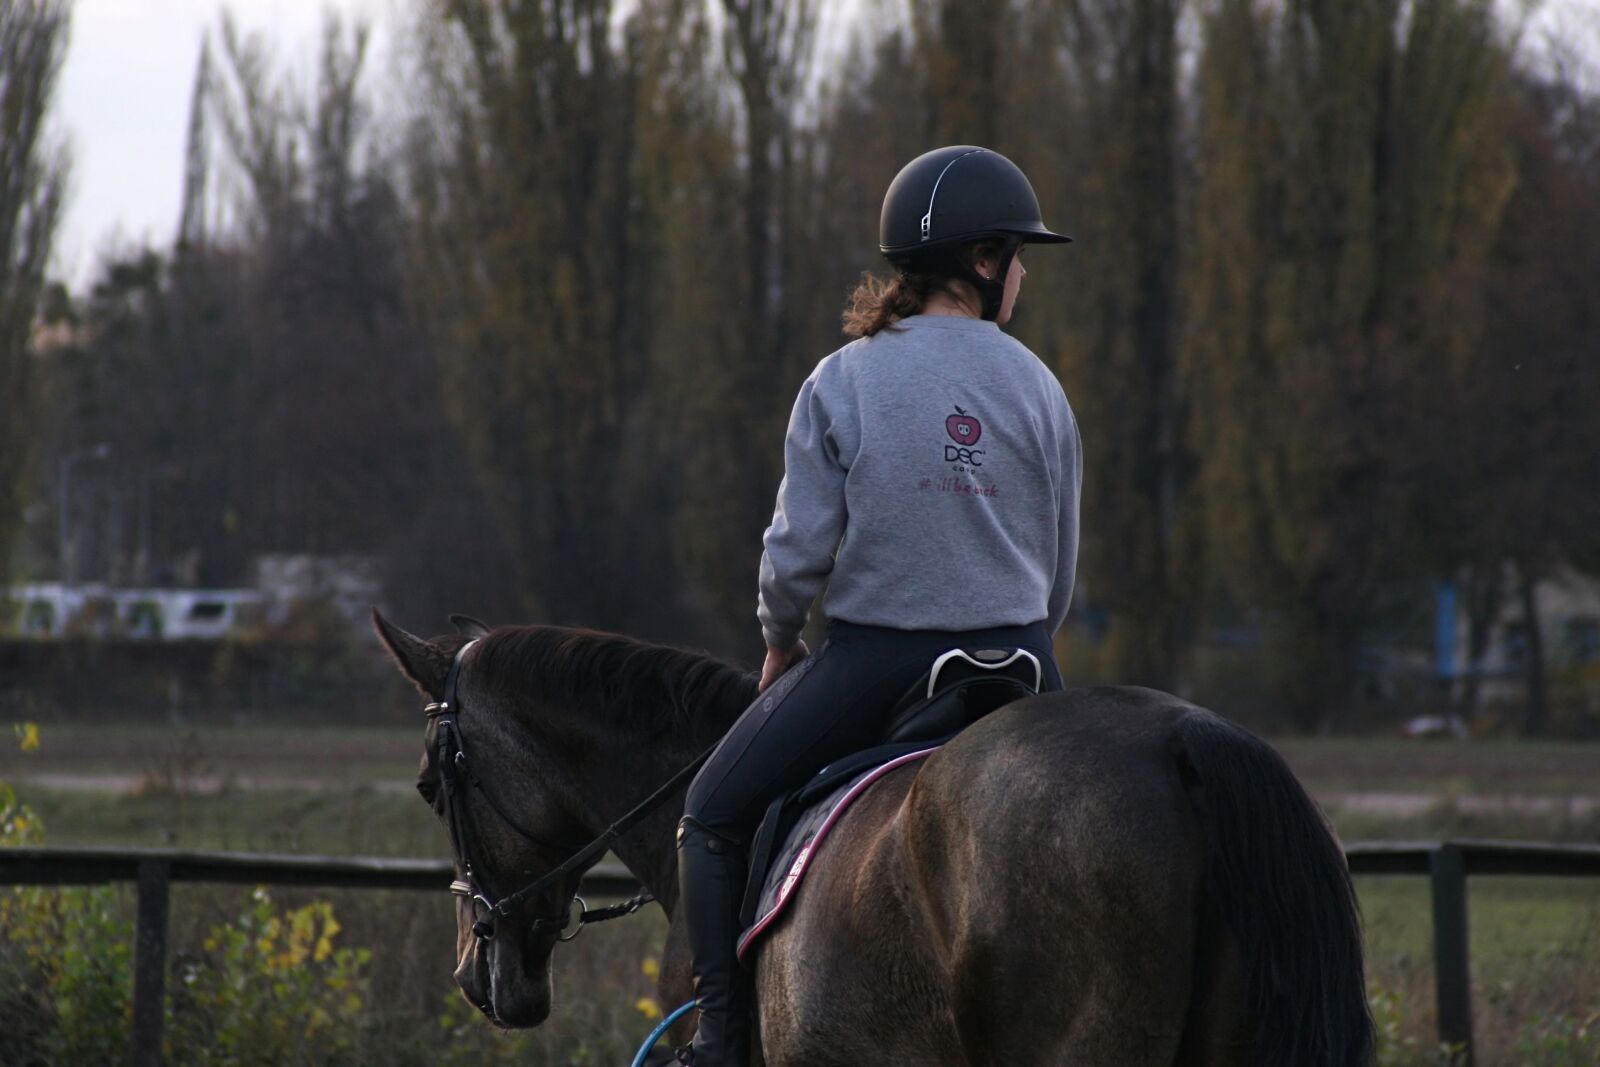 Canon EOS 30D sample photo. Rider, horse, racecourse photography